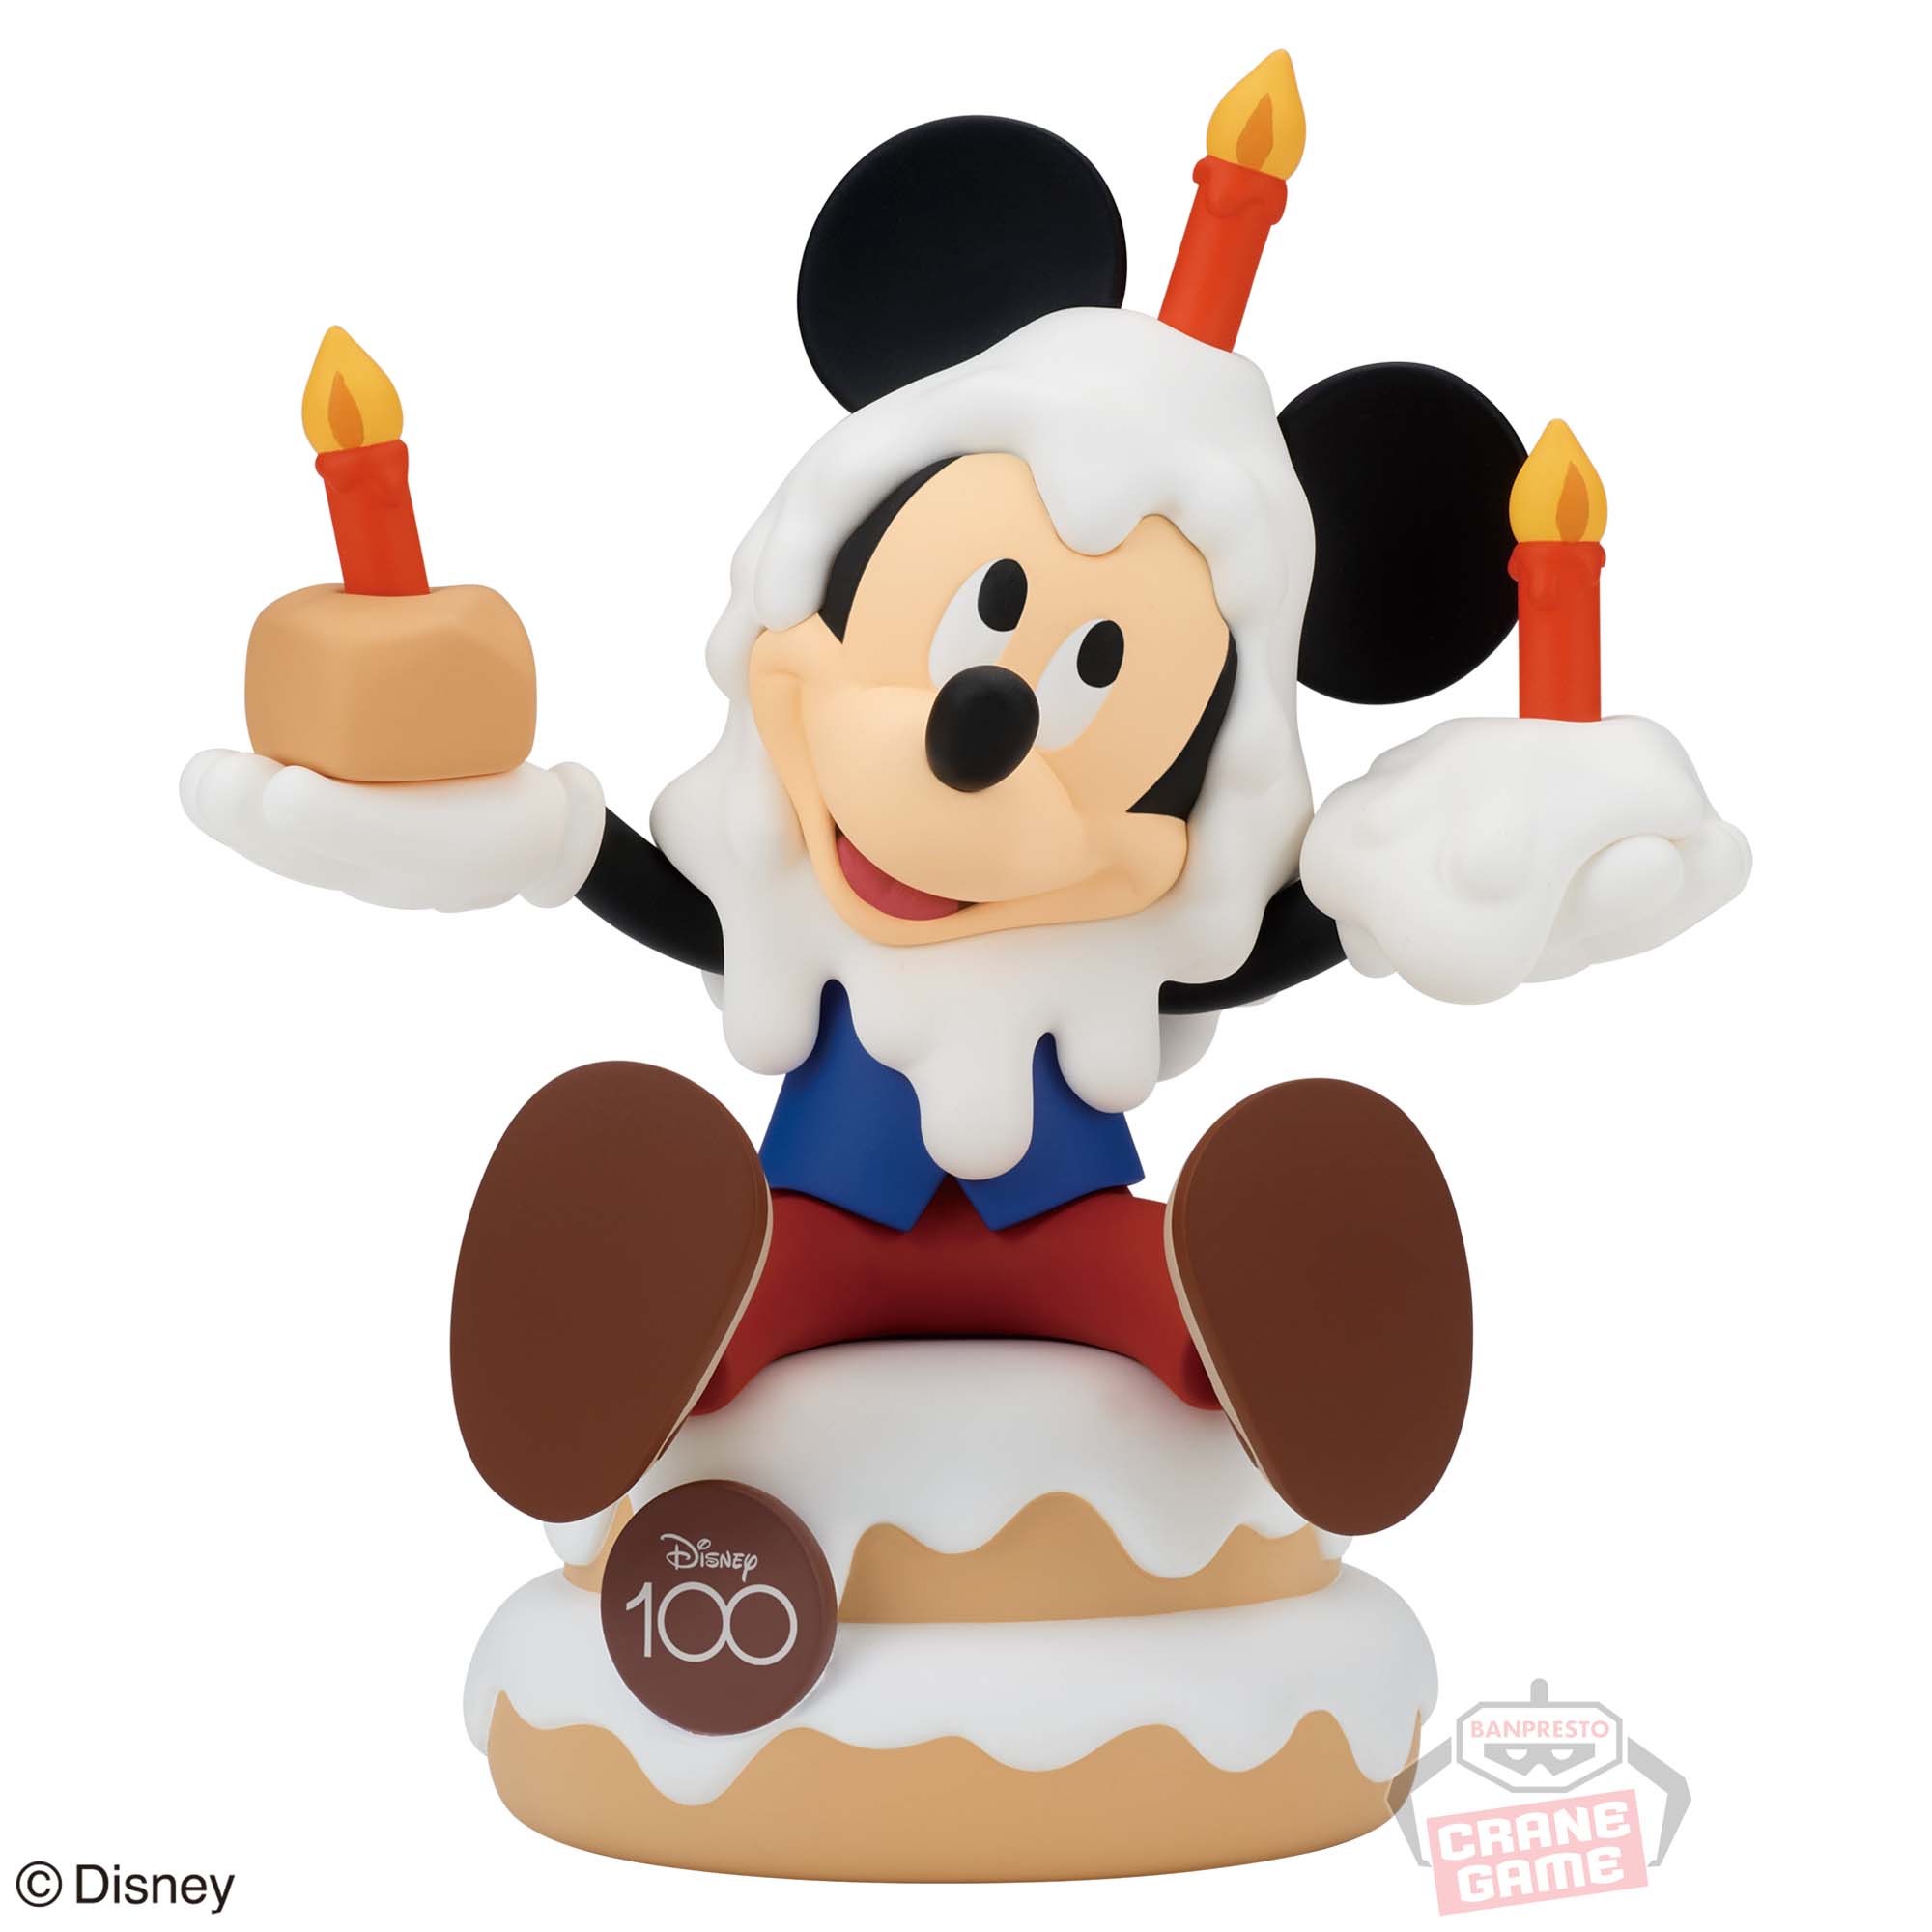 ディズニーキャラクターズ ソフビフィギュア -MICKEY MOUSE- Disney100周年ver.